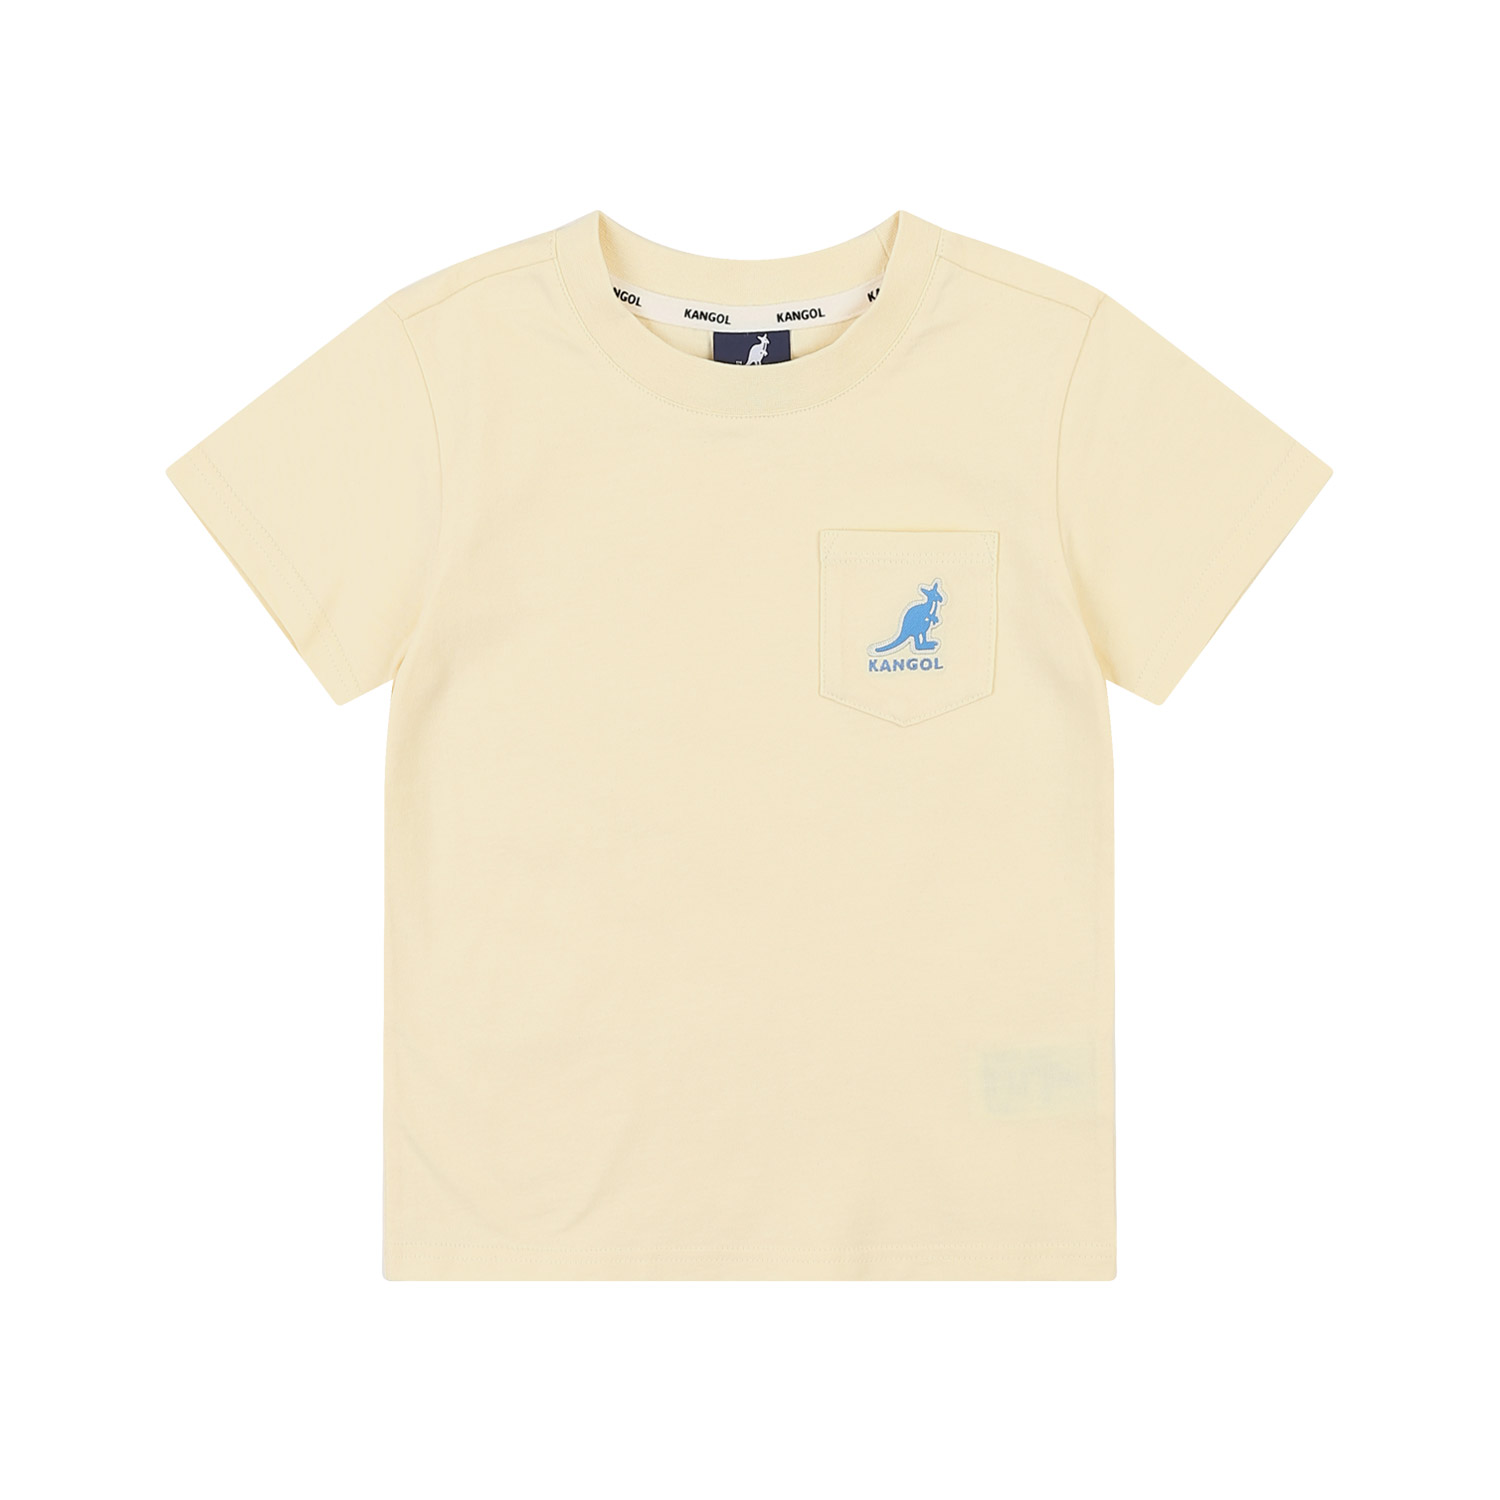 포켓 로고 숏 슬리브 티셔츠 QB 0416 버터